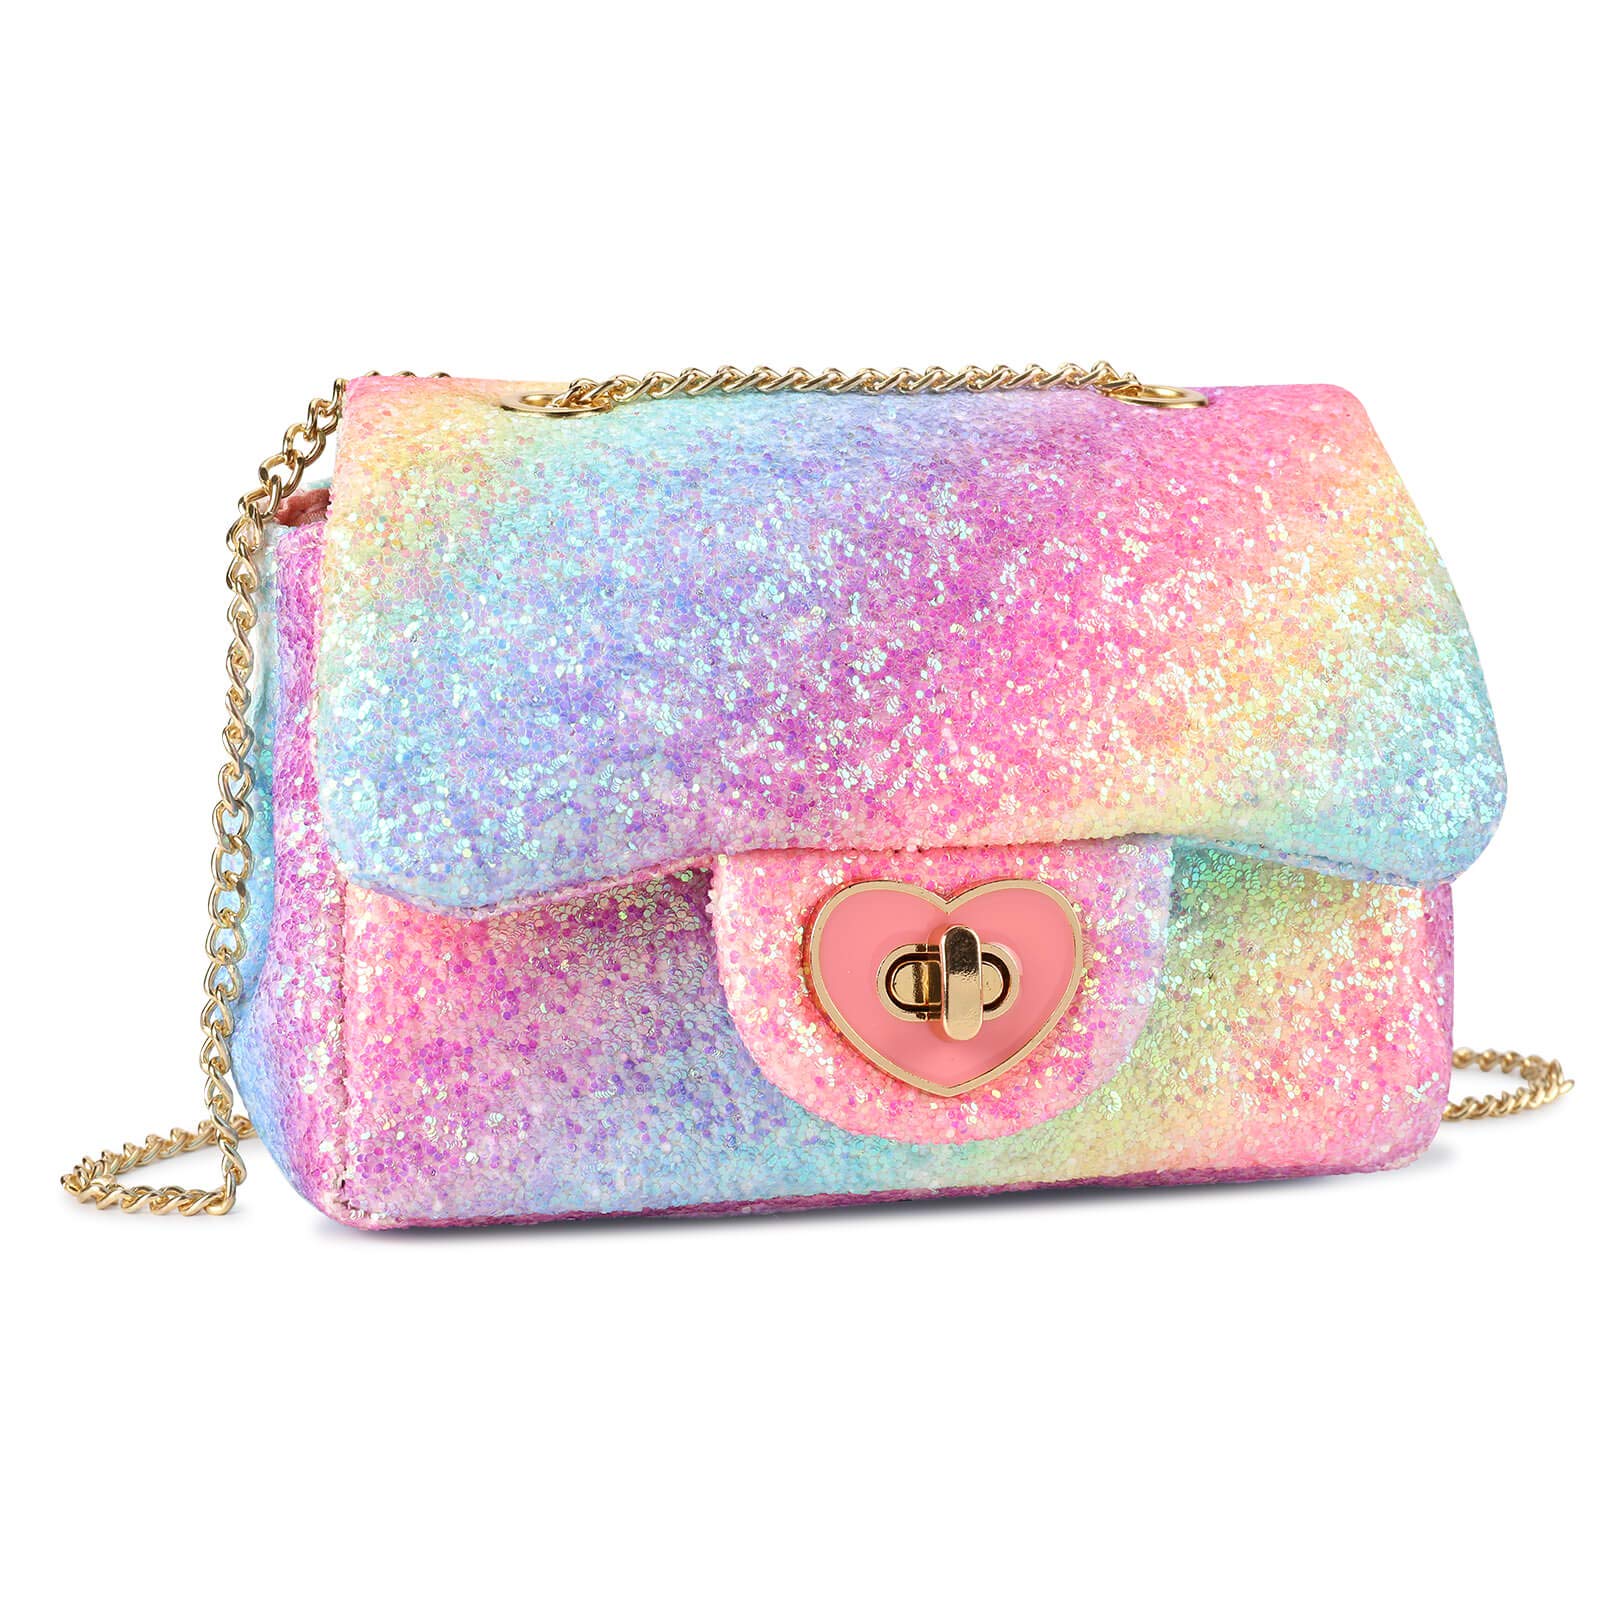 Princess Sparkle  Expensive handbags, Bags, Fancy bags